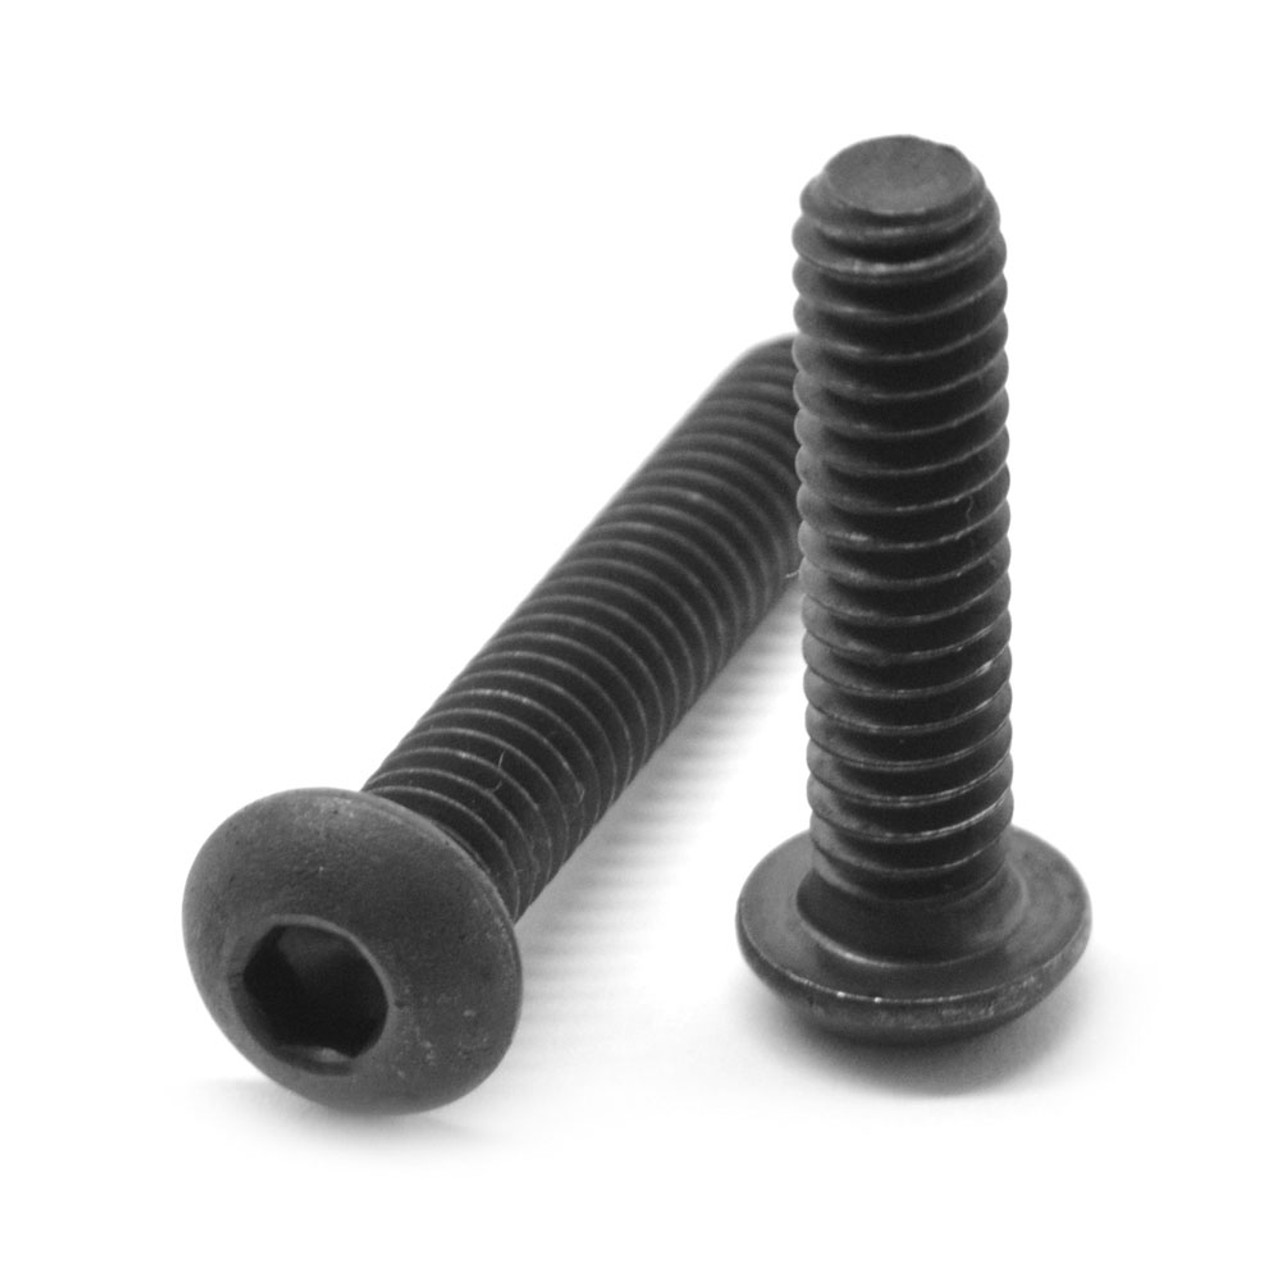 5/16"-24 x 1/2" (FT) Fine Thread Socket Button Head Cap Screw Alloy Steel Black Oxide